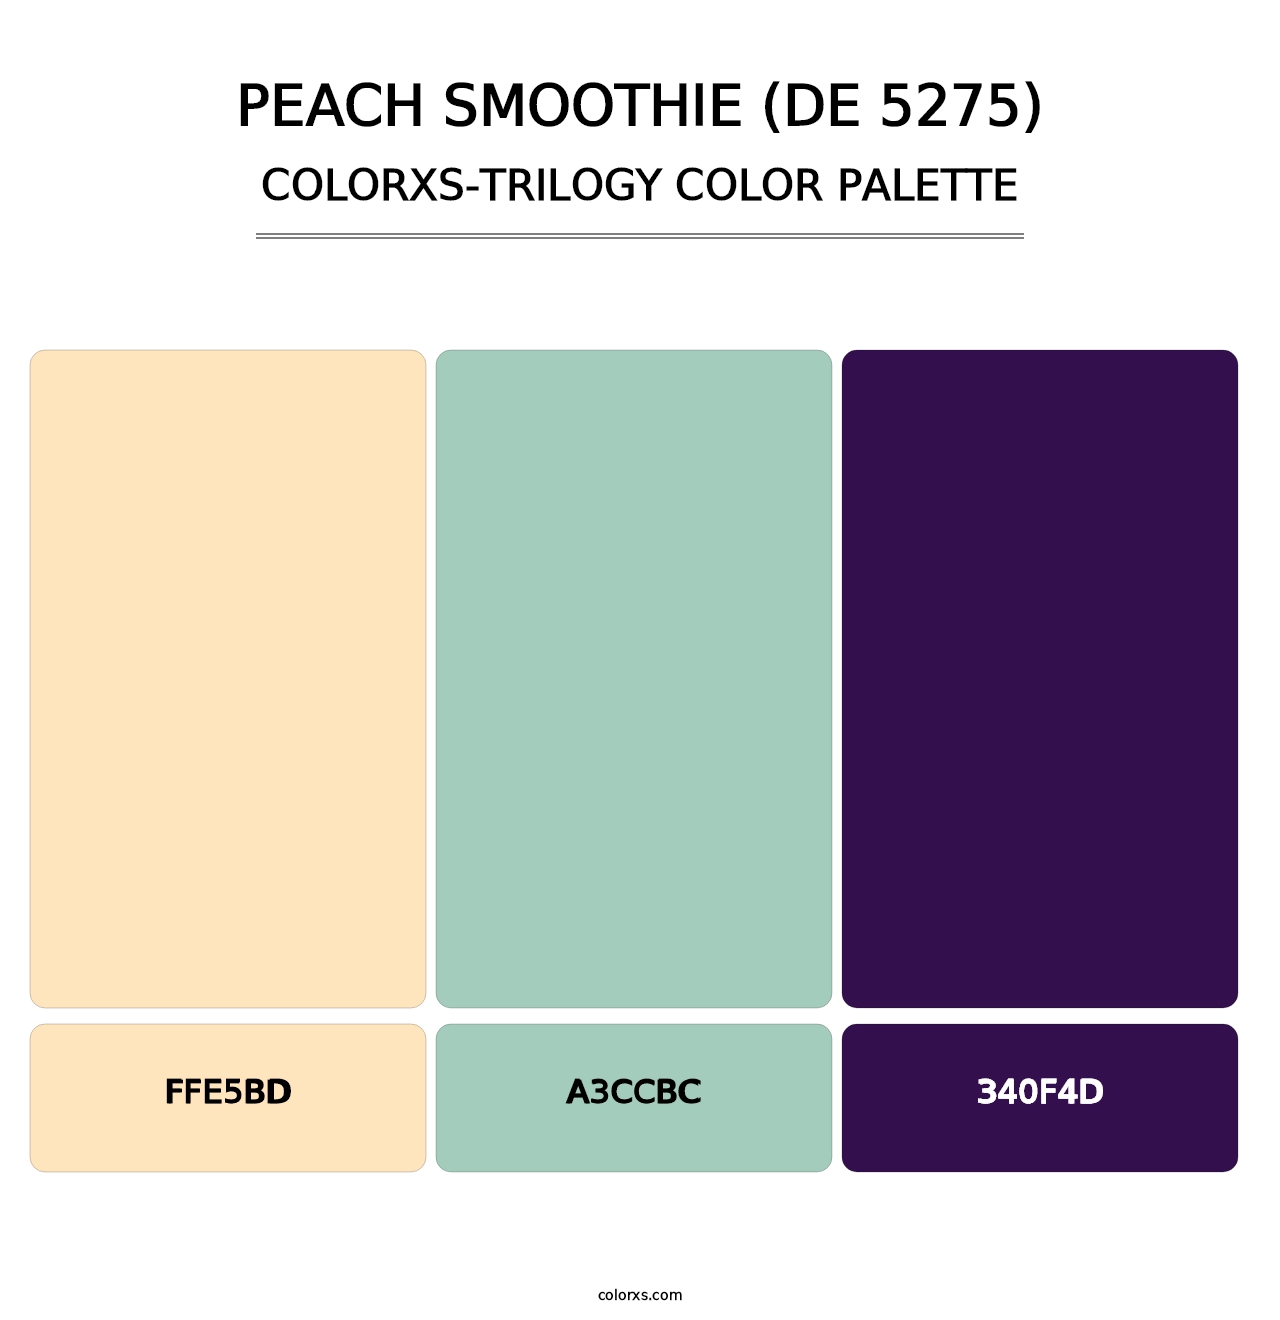 Peach Smoothie (DE 5275) - Colorxs Trilogy Palette